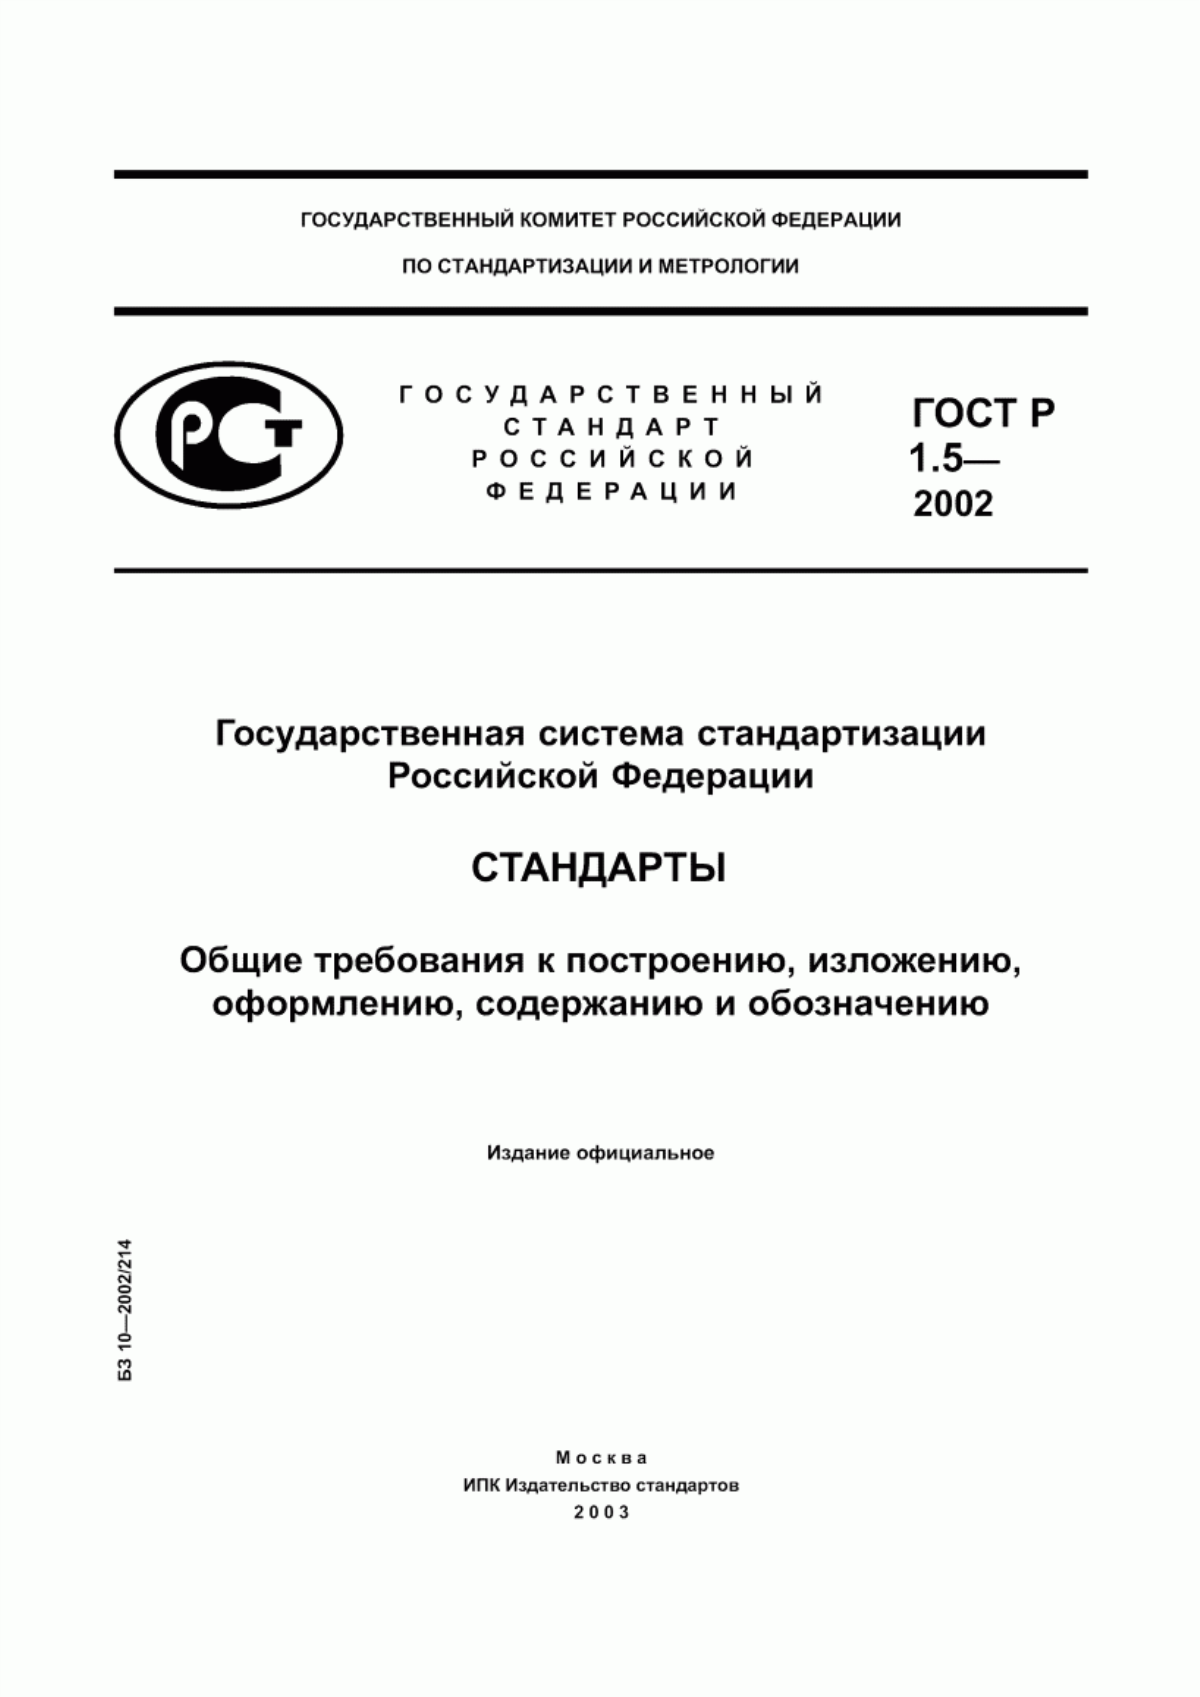 ГОСТ Р 1.5-2002 Государственная система стандартизации Российской Федерации. Стандарты. Общие требования к построению, изложению, оформлению, содержанию и обозначению